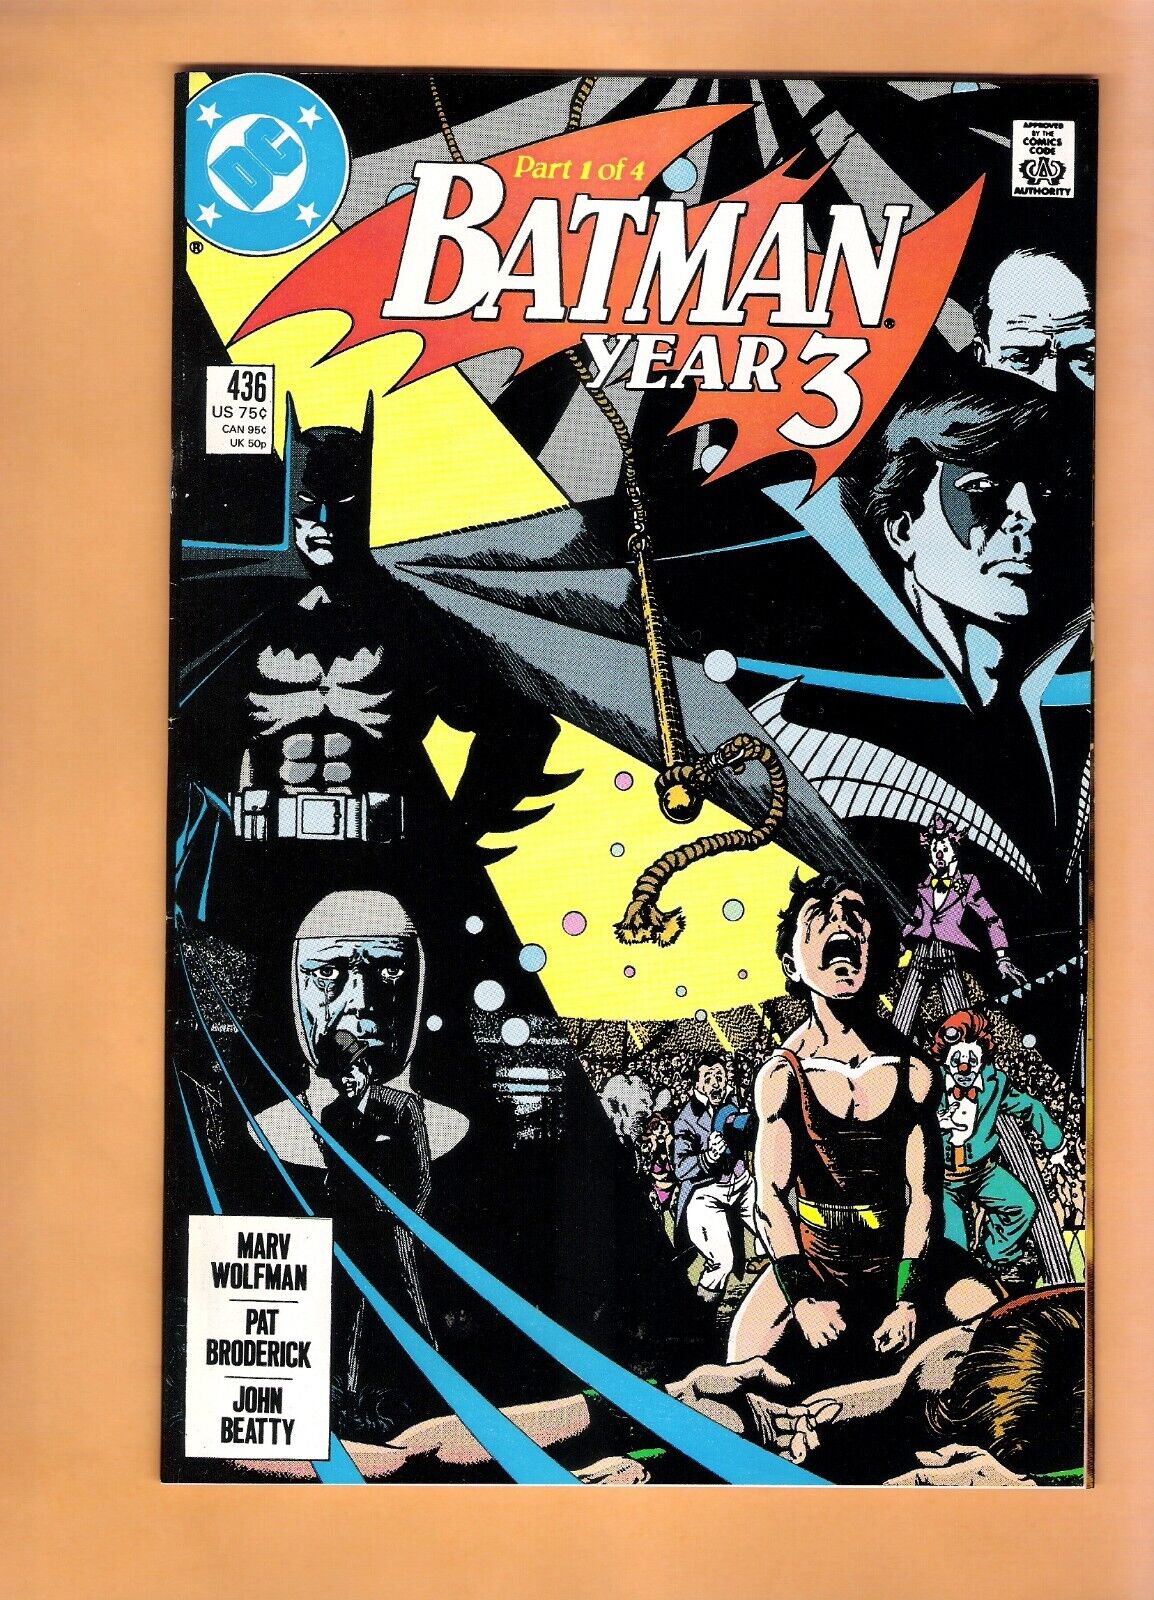 BATMAN #436 vintage DC comic book 1989 First print Appearance TIM DRAKE NM-